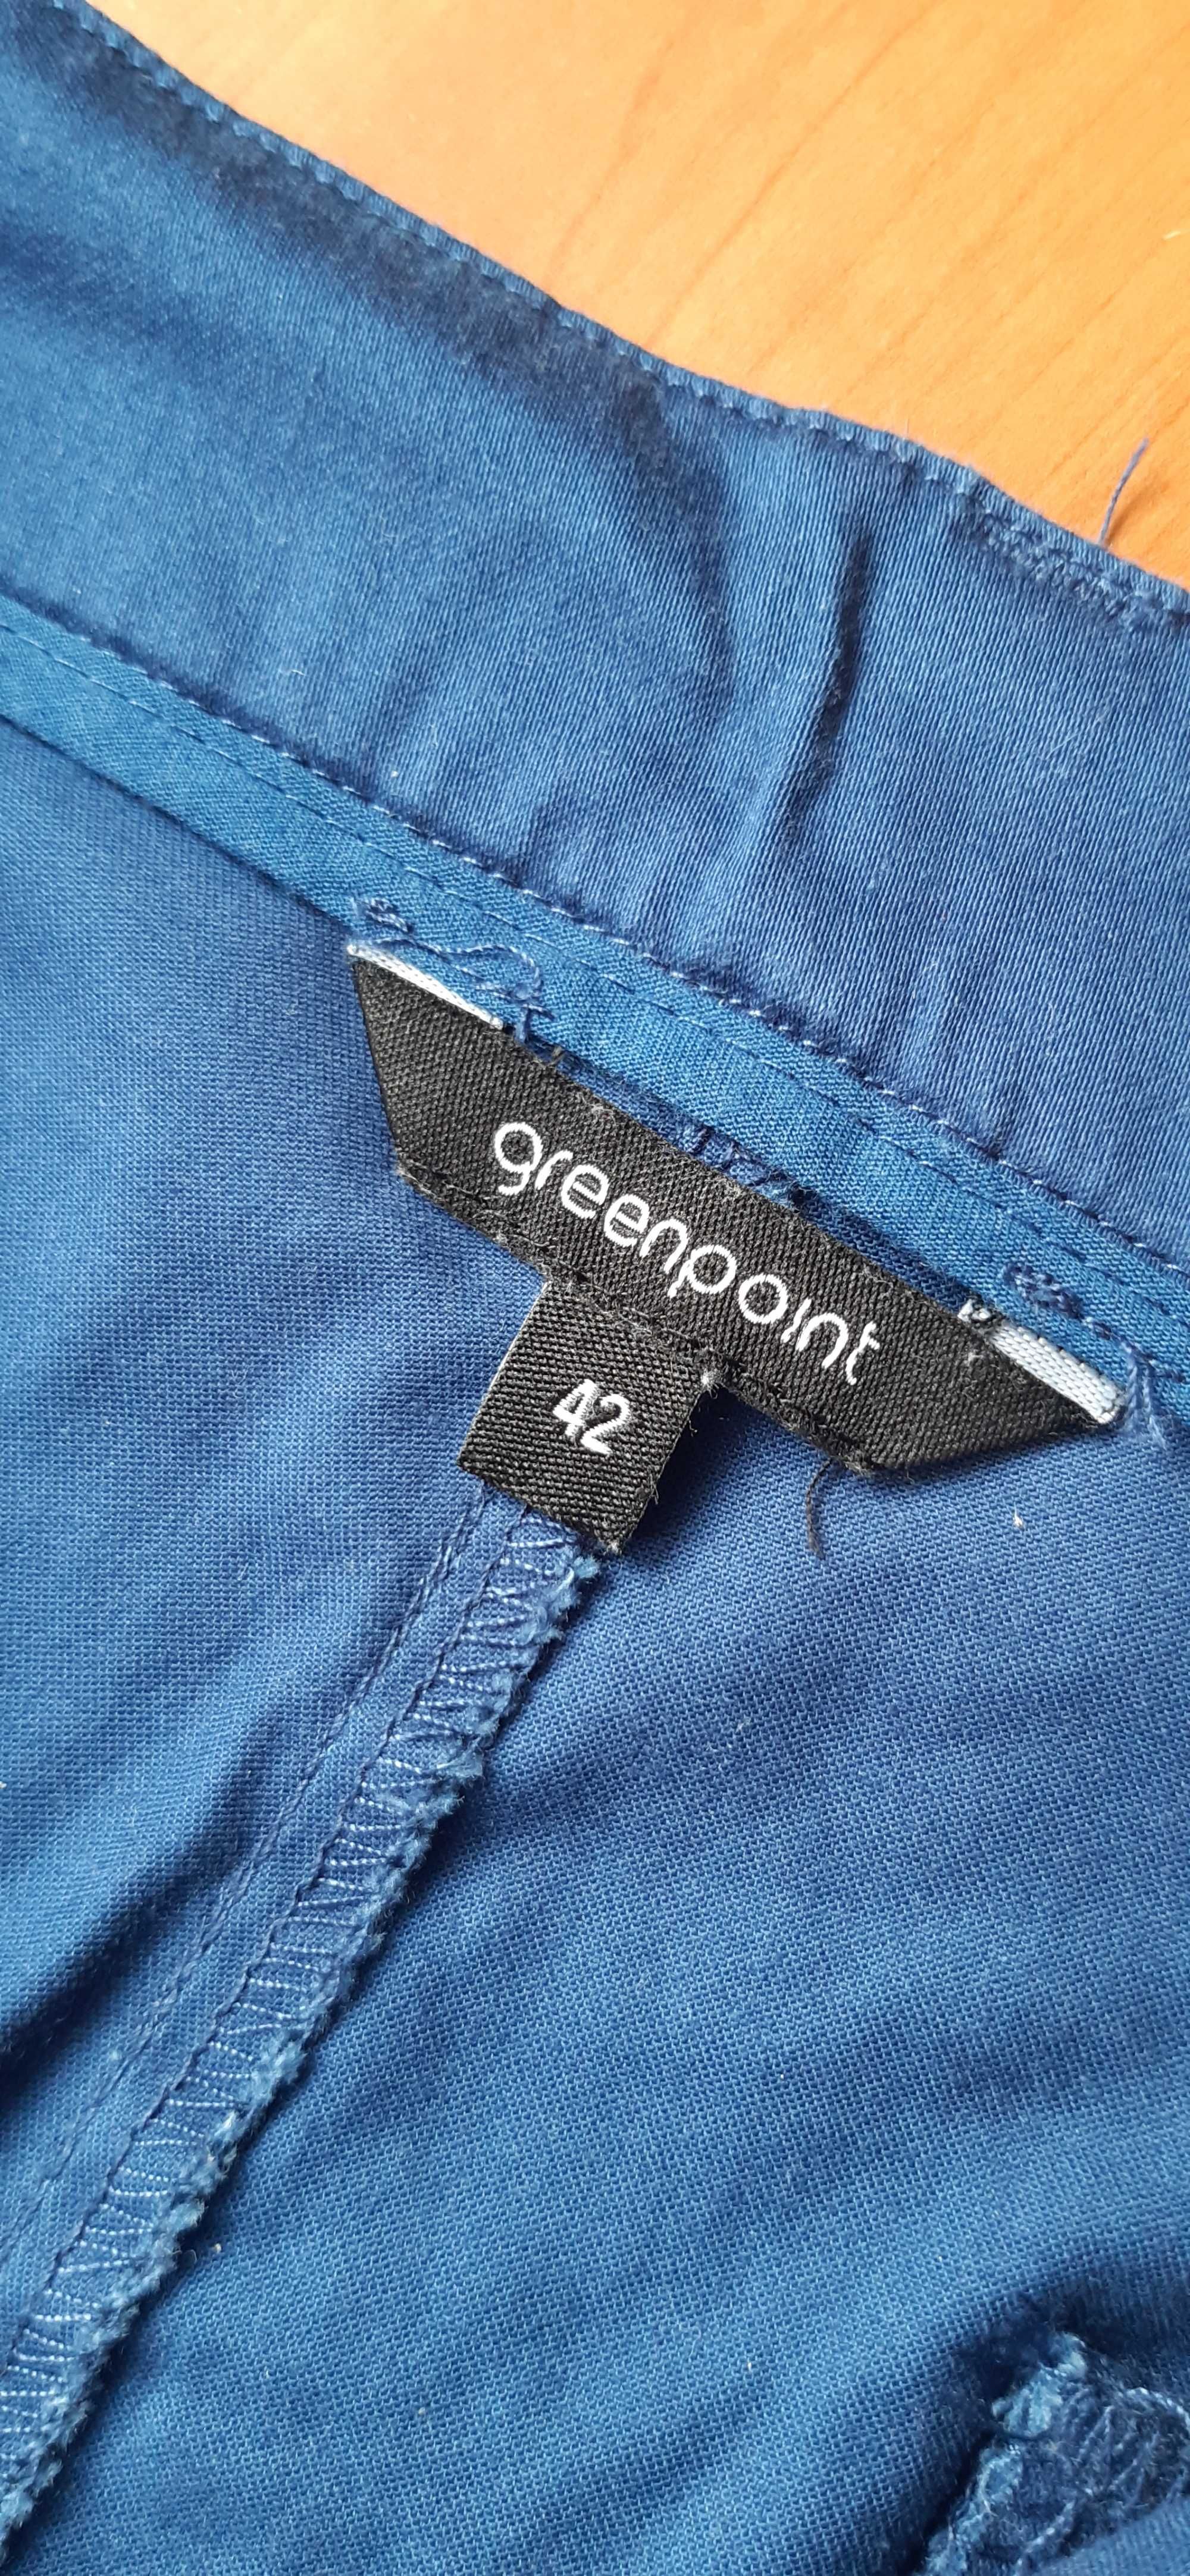 Spodnie damskie Greenpoint rozmiar 42